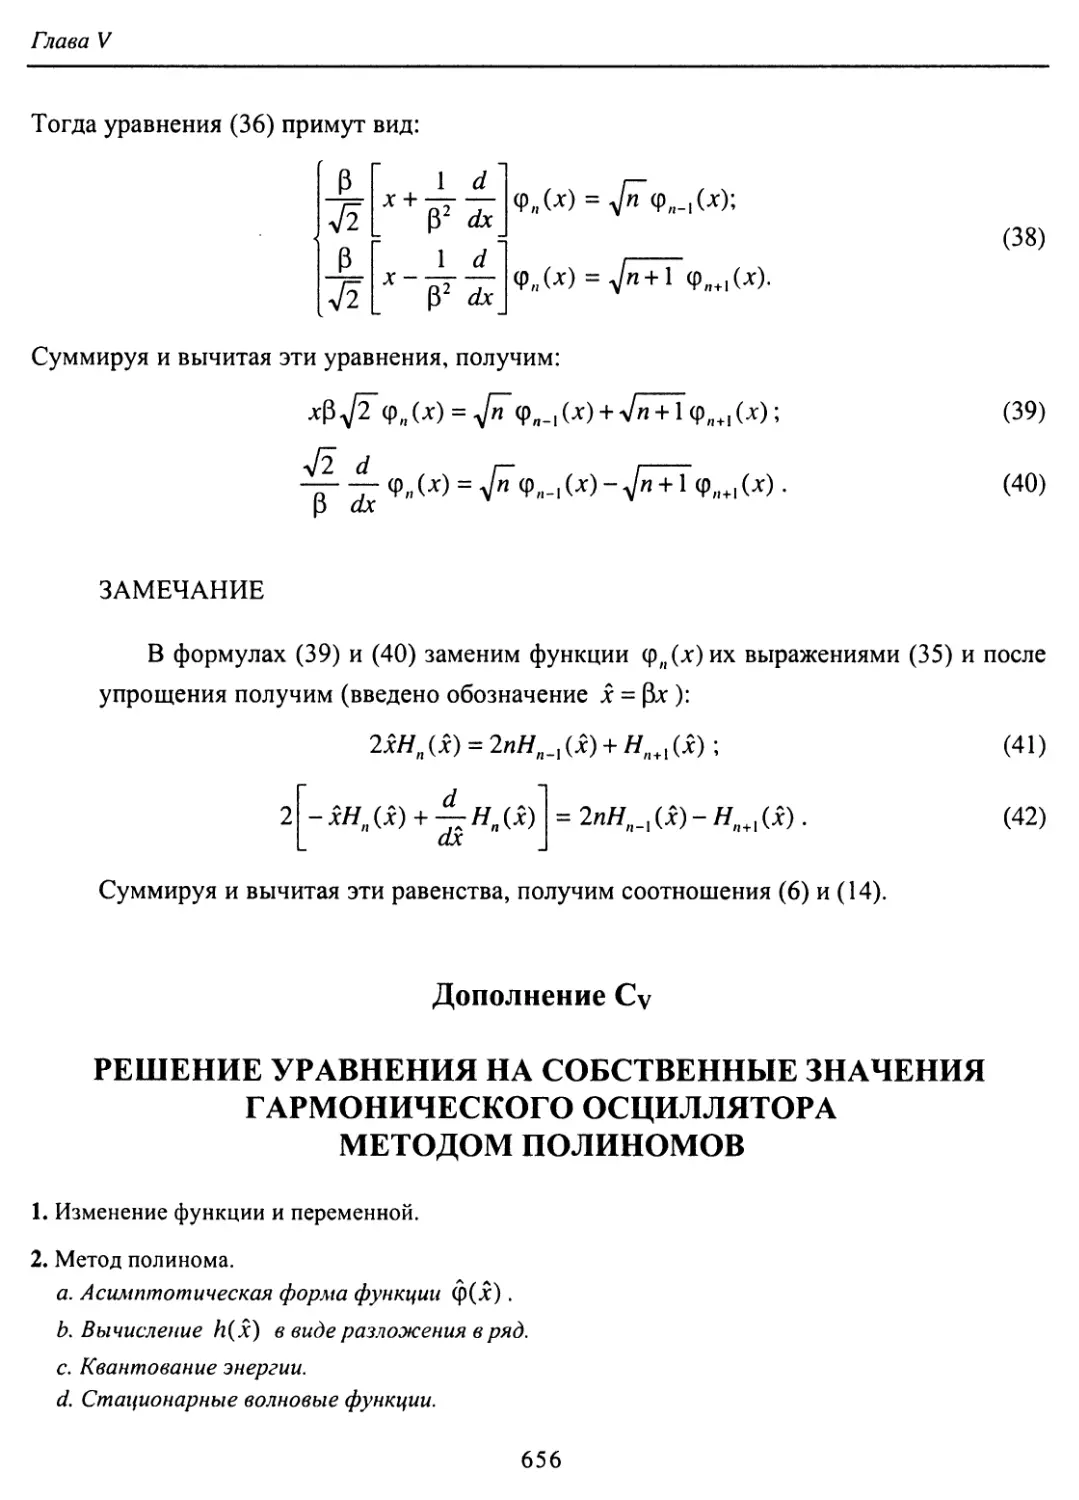 С. Решение уравнения на собственные значения гармонического осциллятора методом полиномов